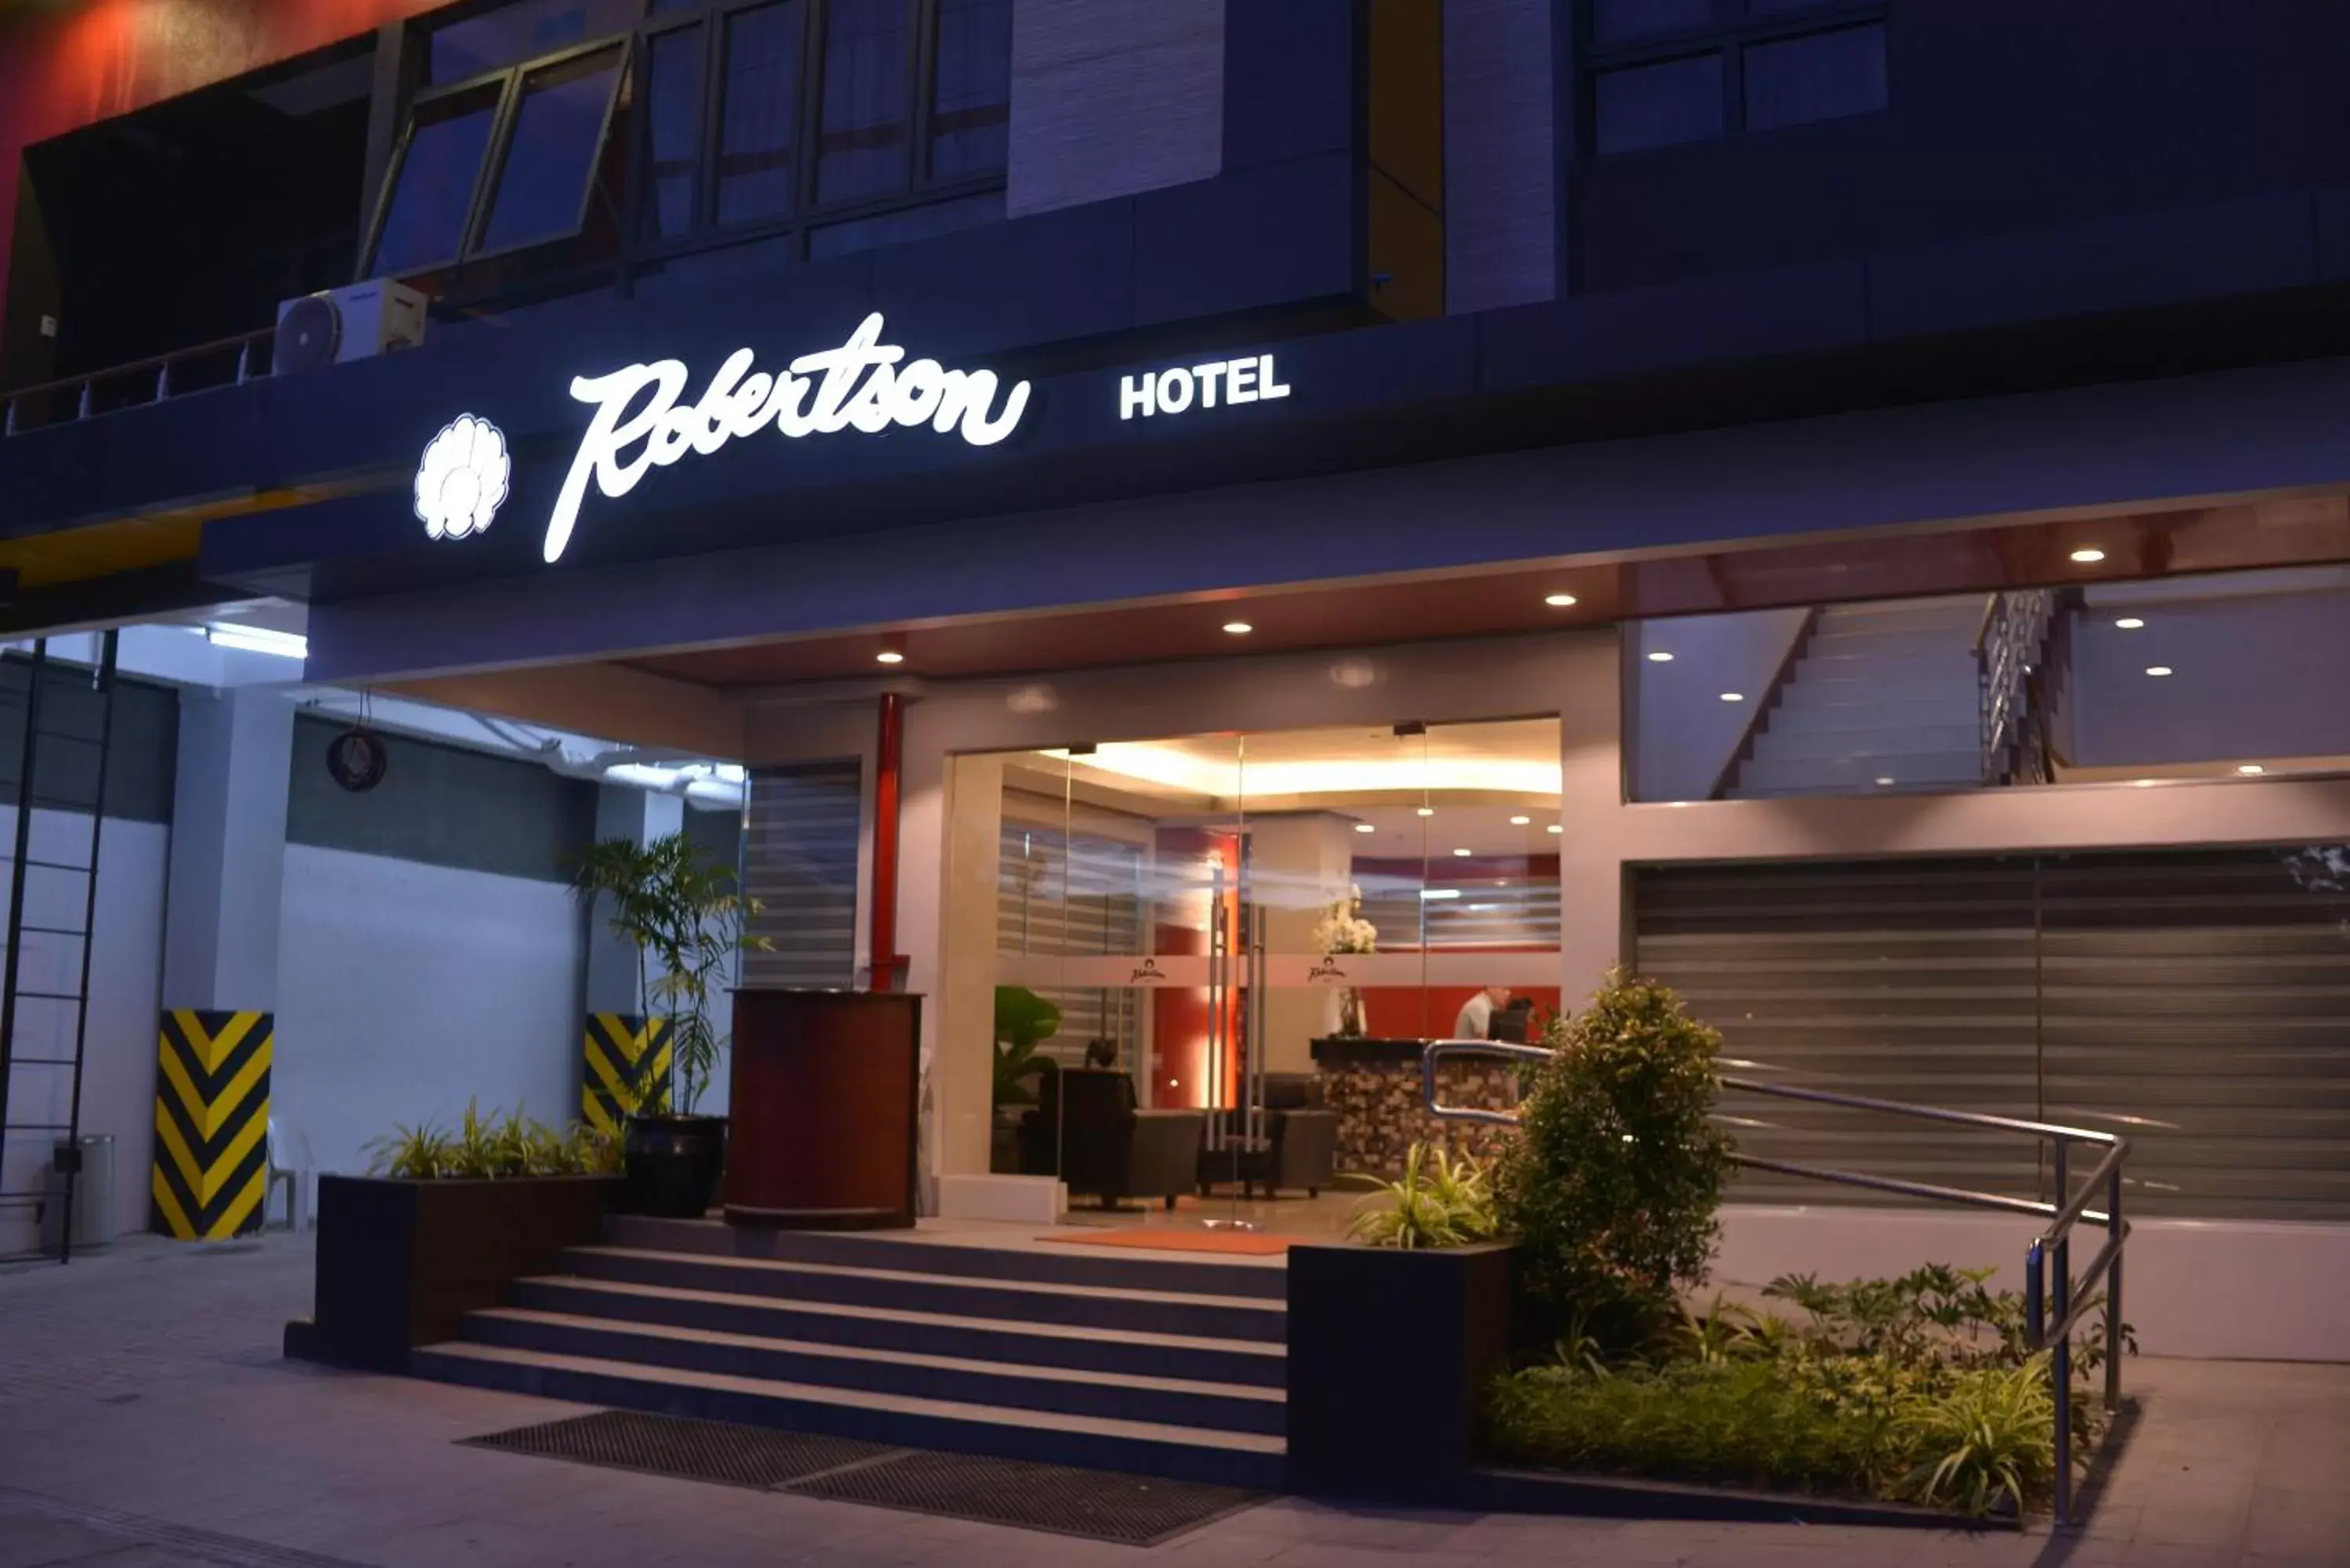 Facade/entrance in Robertson Hotel